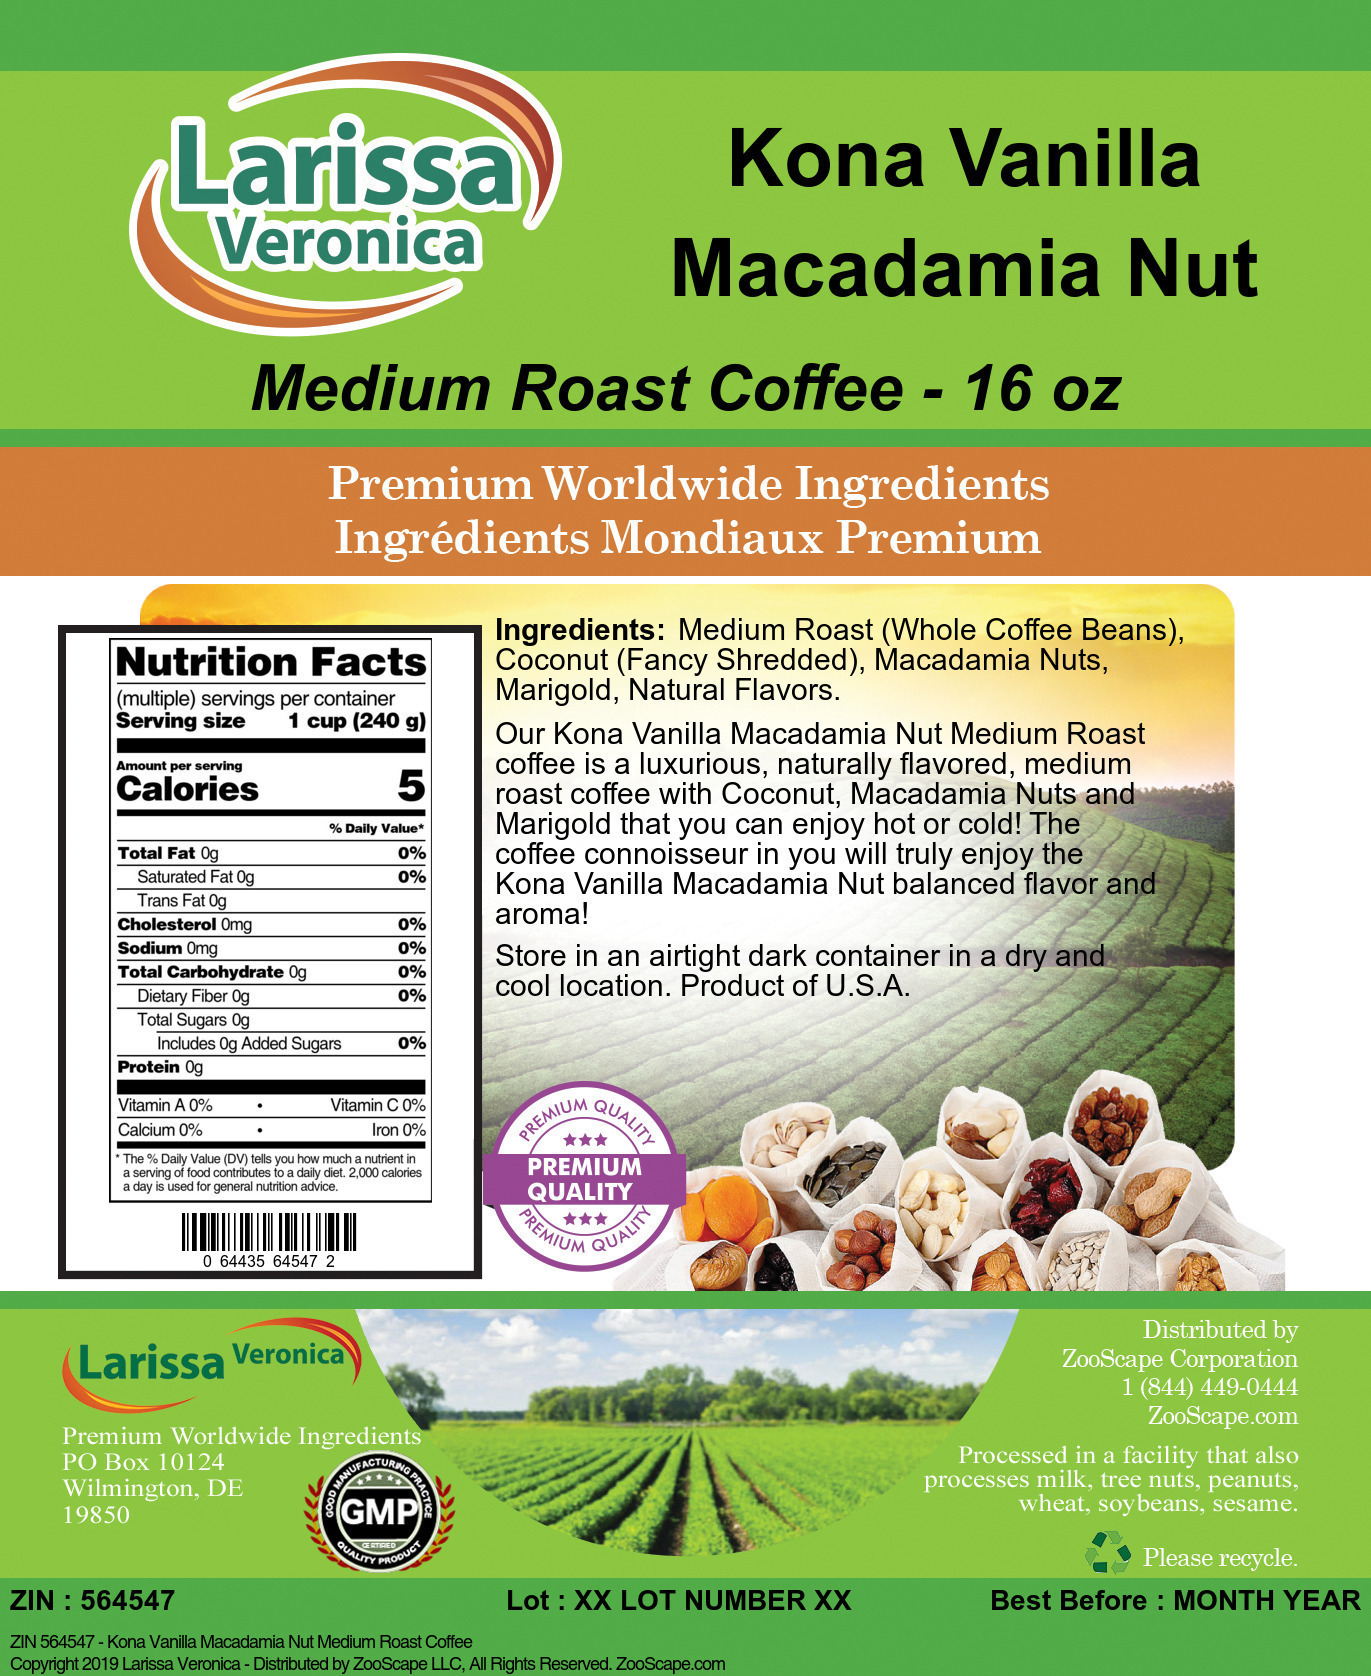 Kona Vanilla Macadamia Nut Medium Roast Coffee - Label